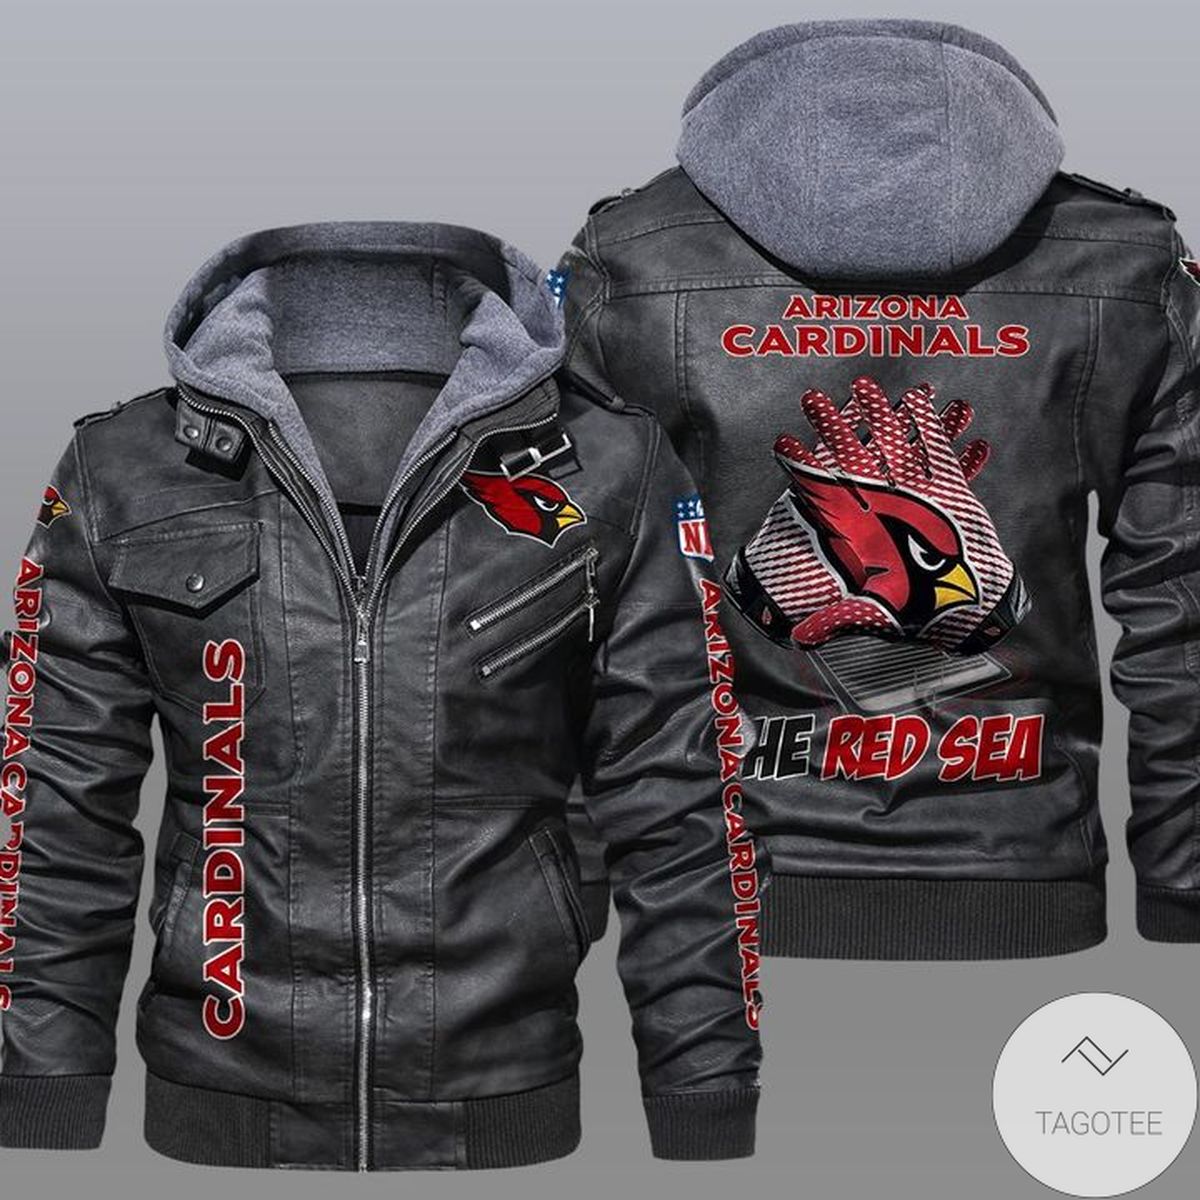 Arizona Cardinals 2D Leather Jacket